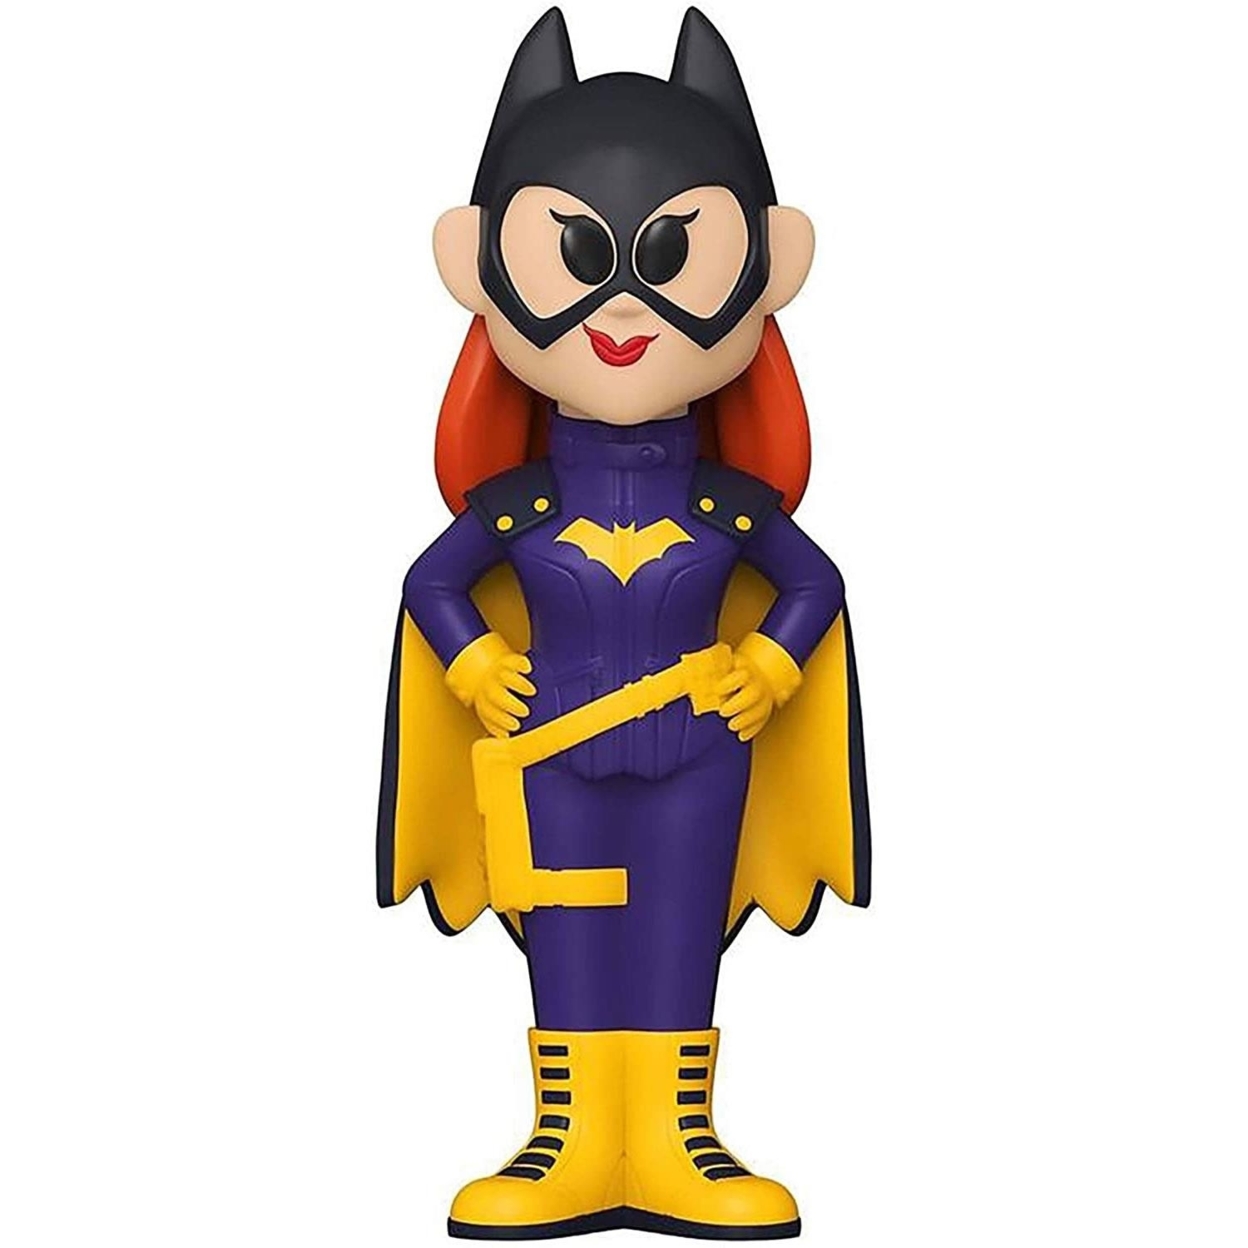 Funko Soda Batgirl 2015 Retro DC Batman Superhero Figure Collectible